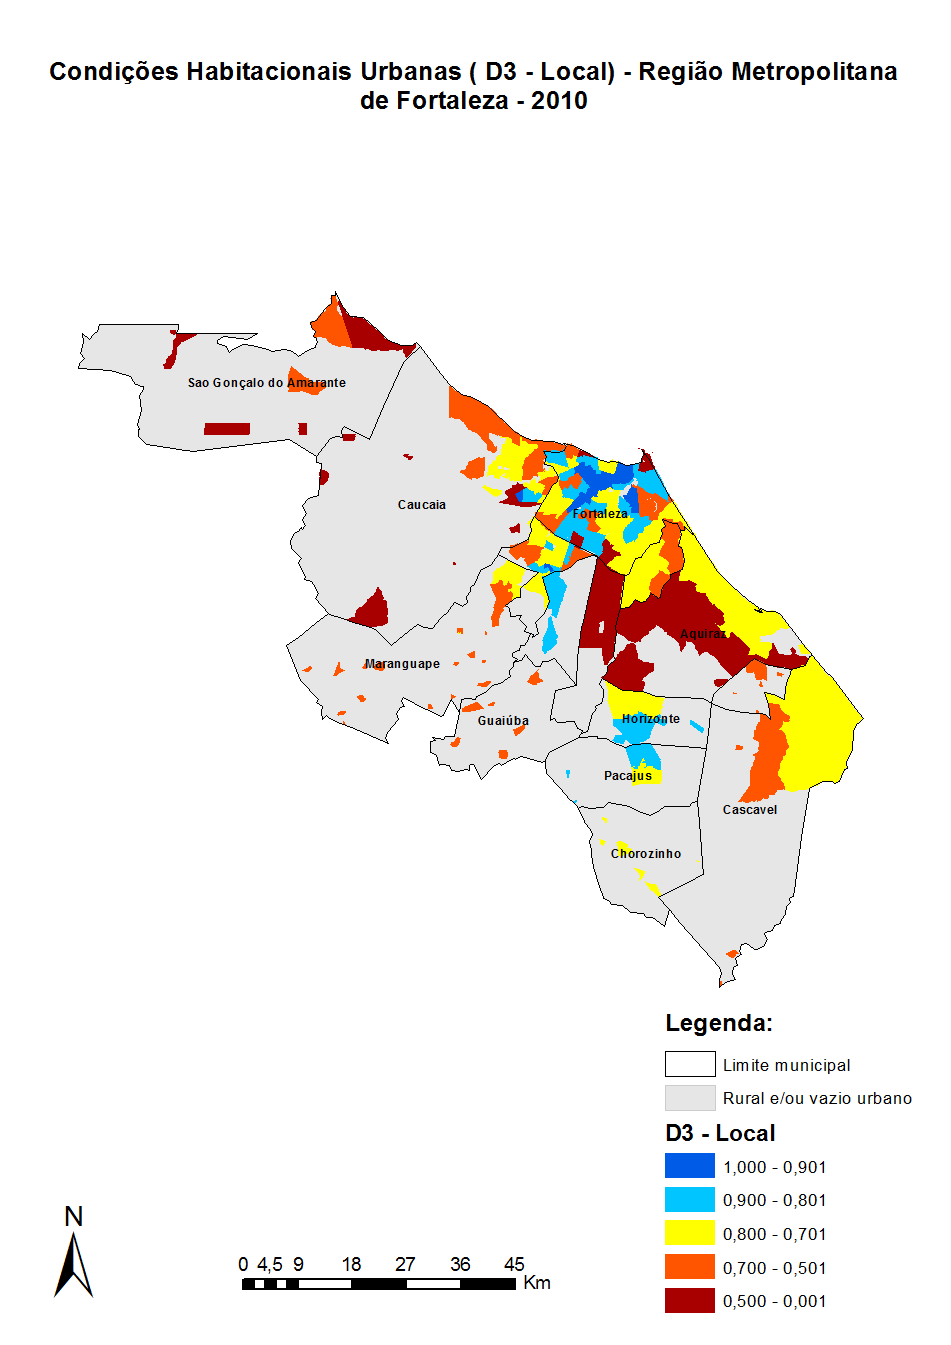 Nos demais municípios metropolitanos os recortes espaciais com índices mais elevados são detectados nos municípios de Caucaia, Maracanaú, Pacatuba, Horizonte e Pacajus.